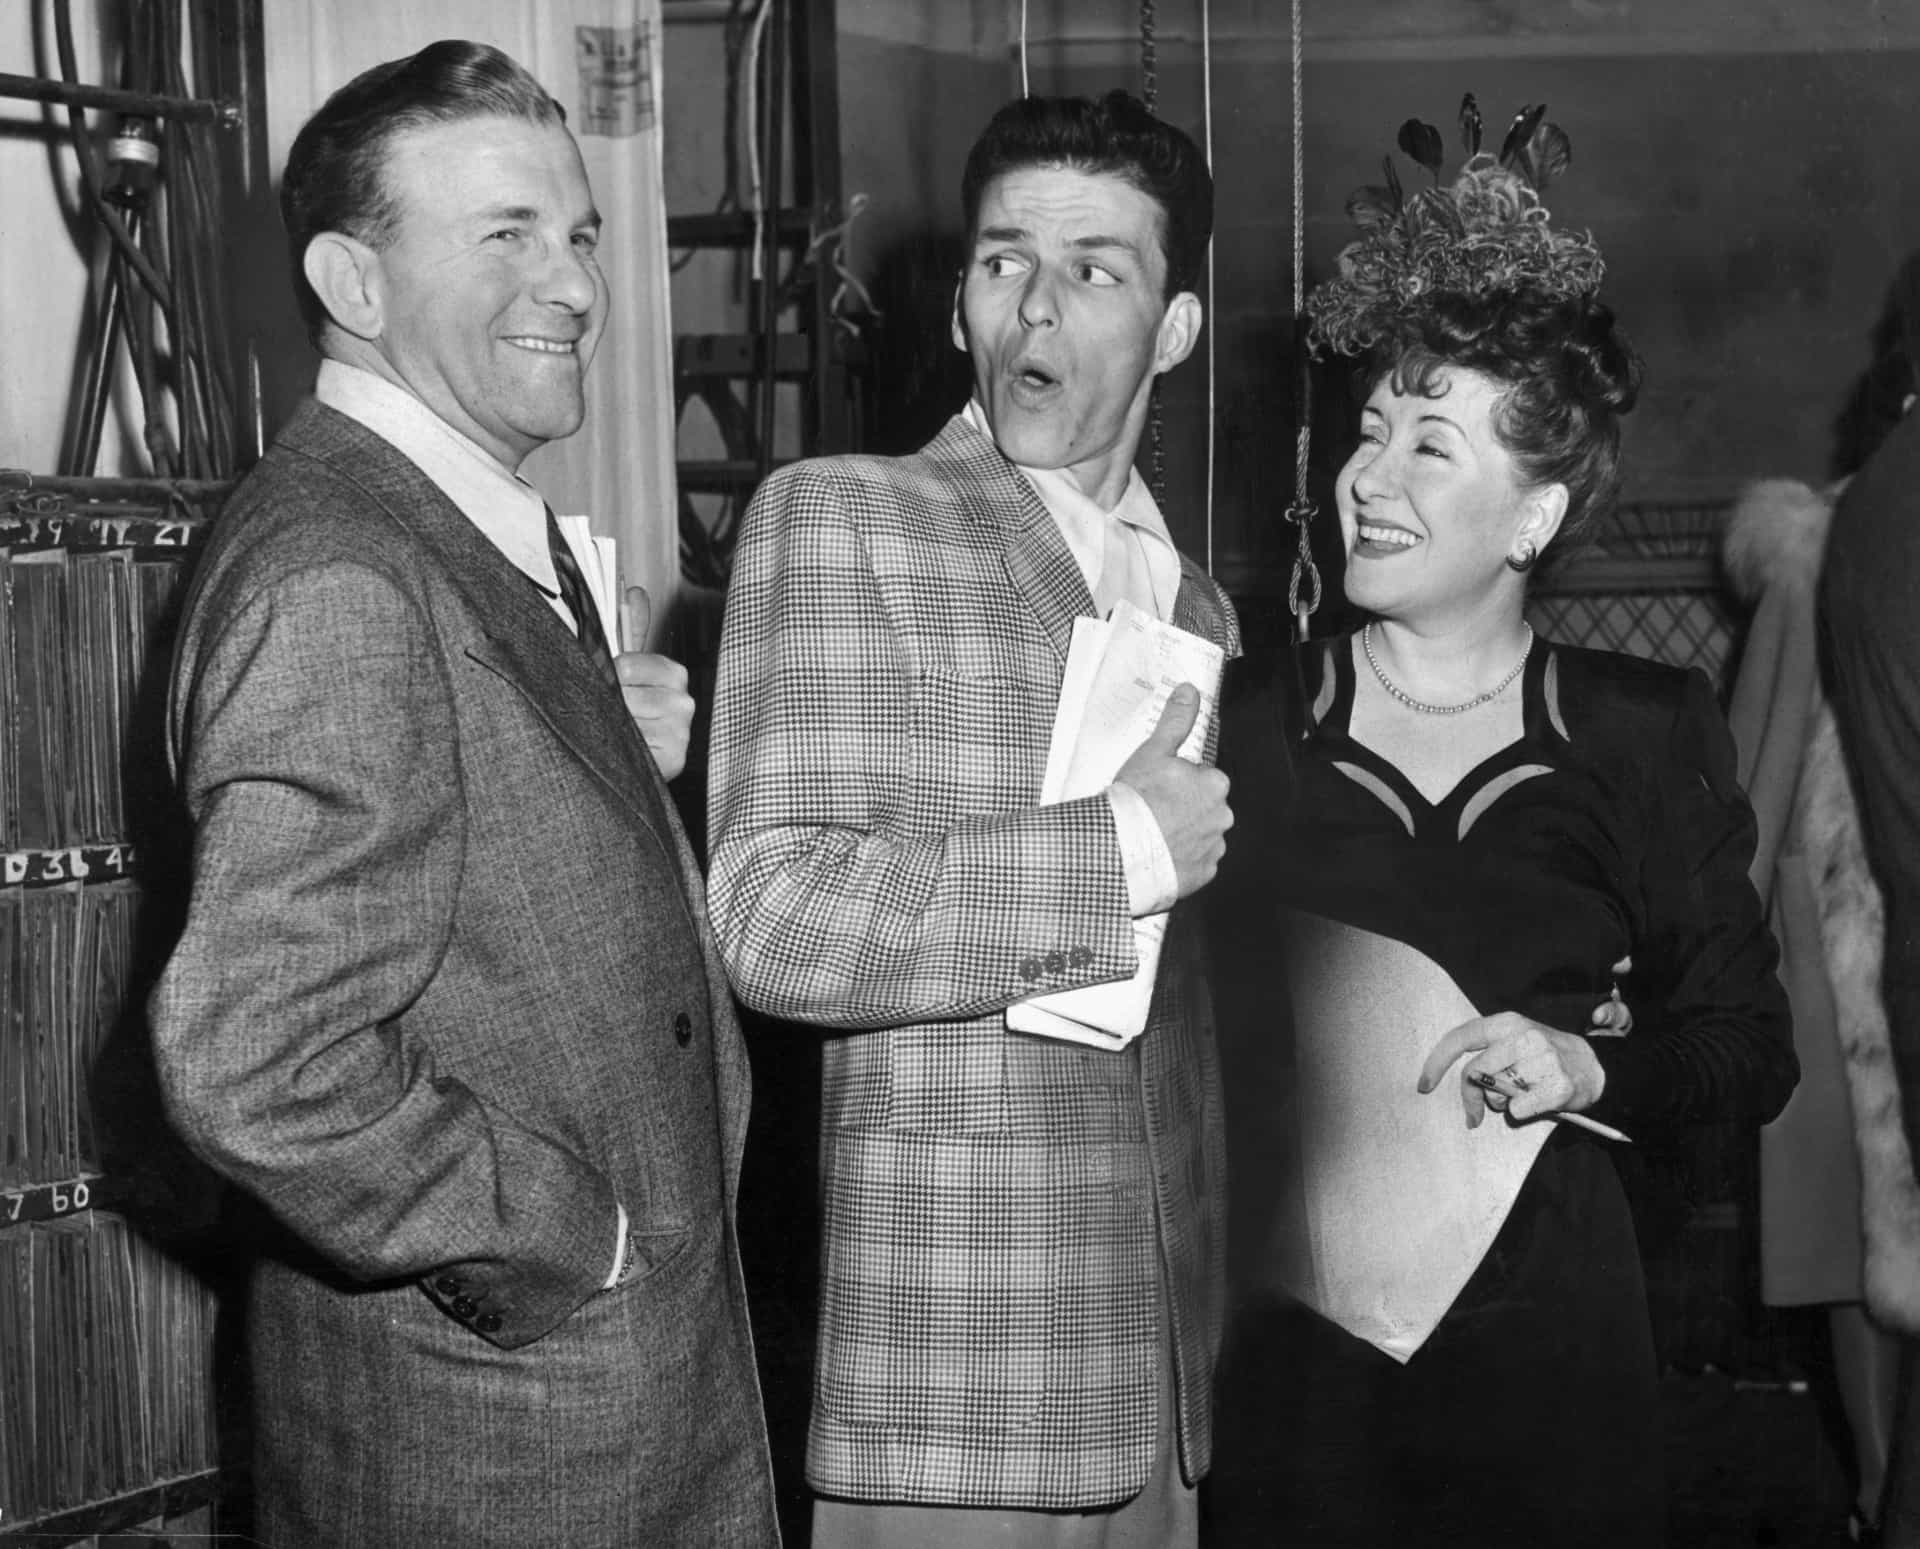 Sinatra blödelt mit den Schauspielern und Komikern George Burns und Gracie Allen herum. Möglicherweise entstand die Aufnahme am Set der Radioshow "The Burns and Allen".